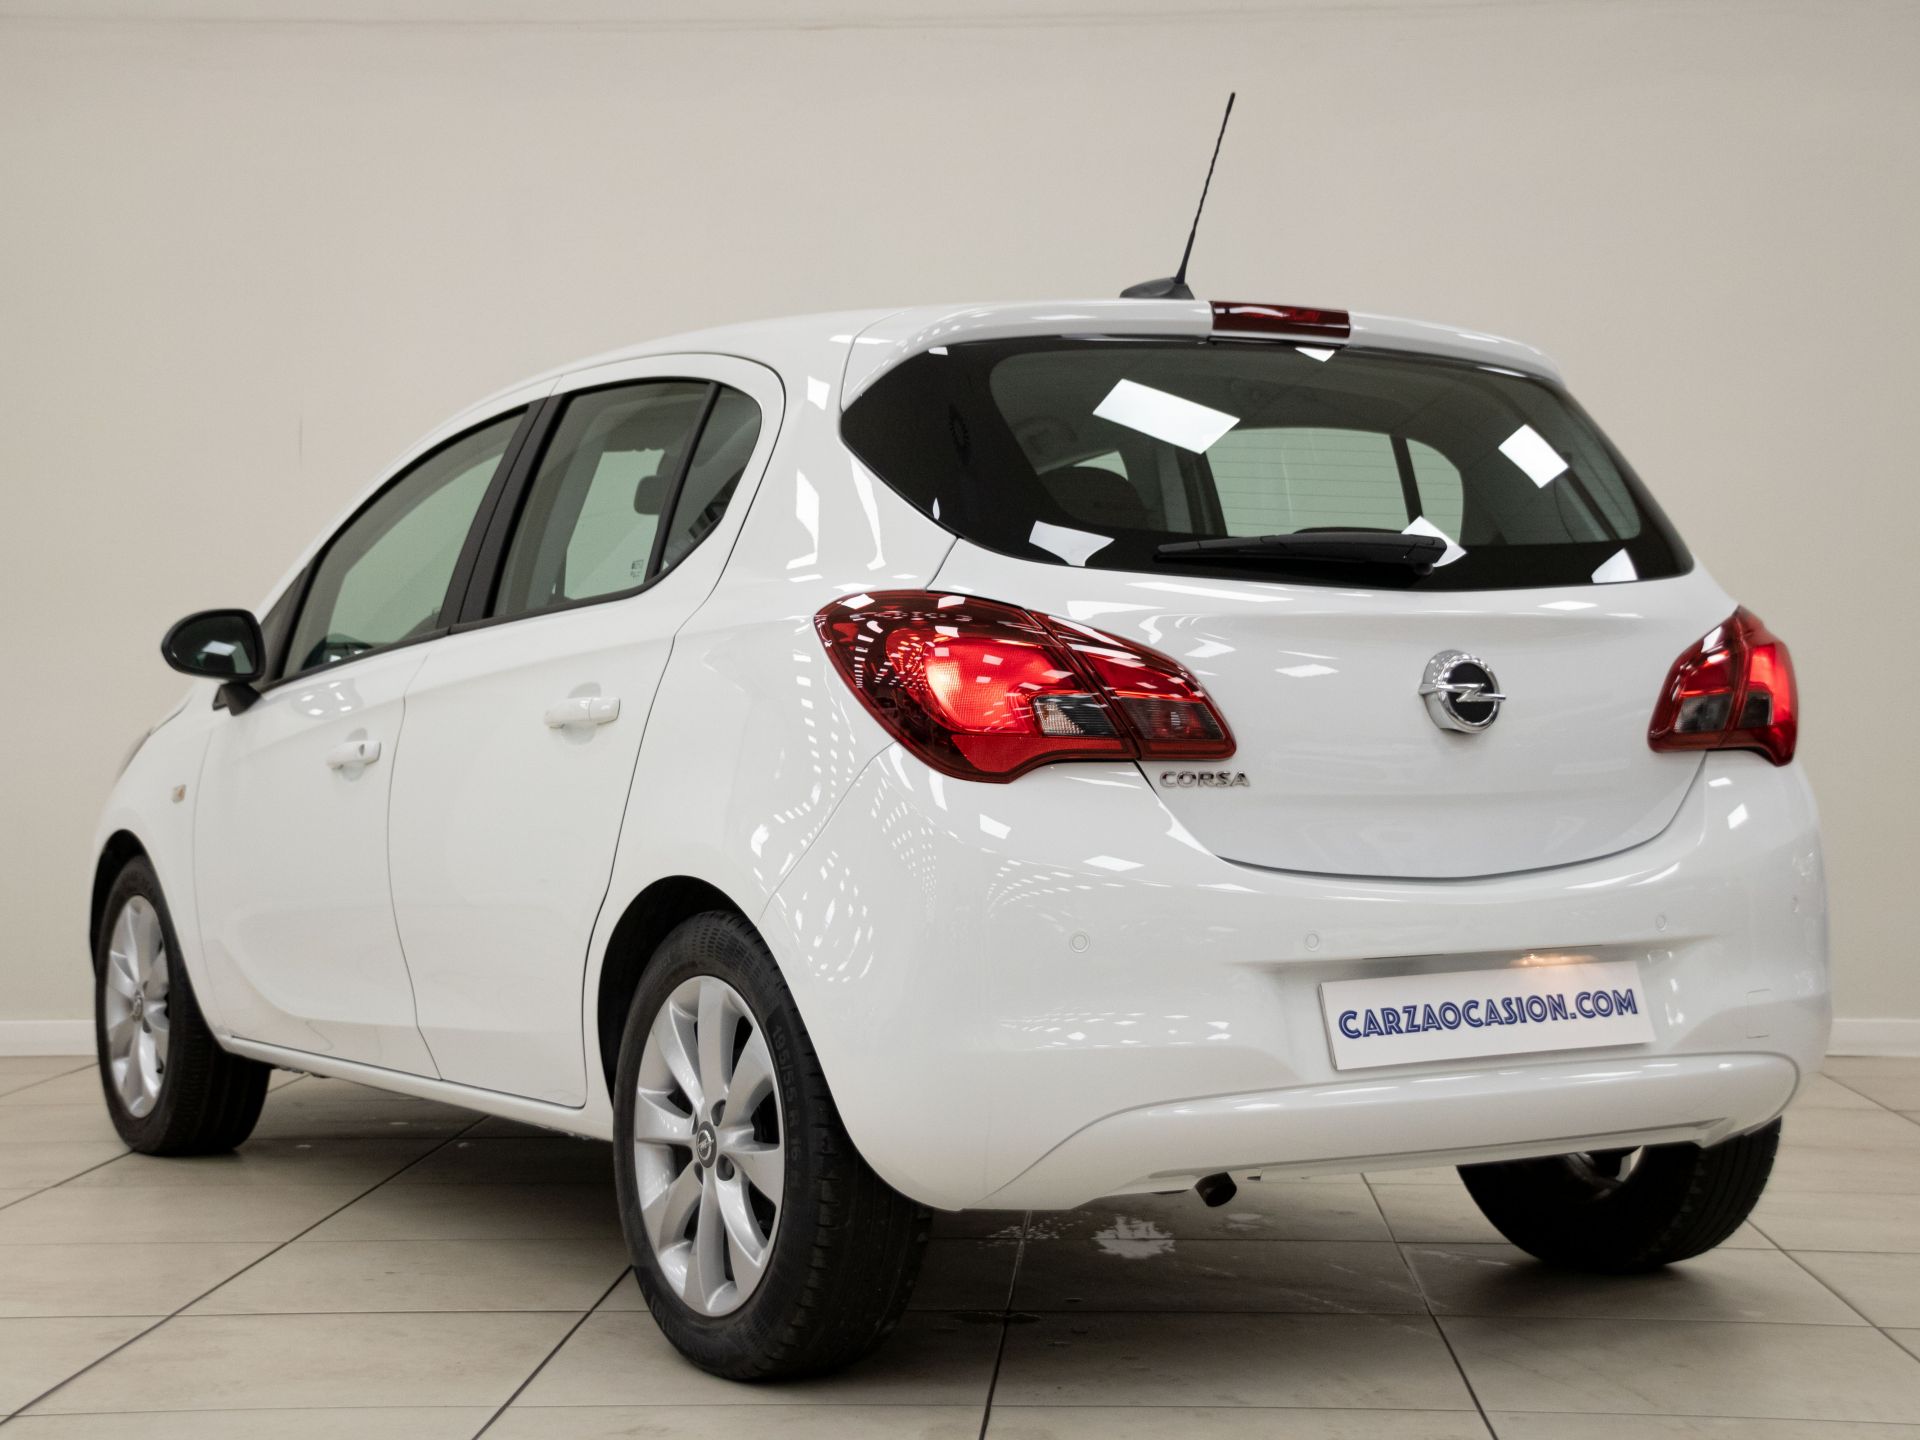 Opel Corsa 1.4 Selective 66kW (90CV)